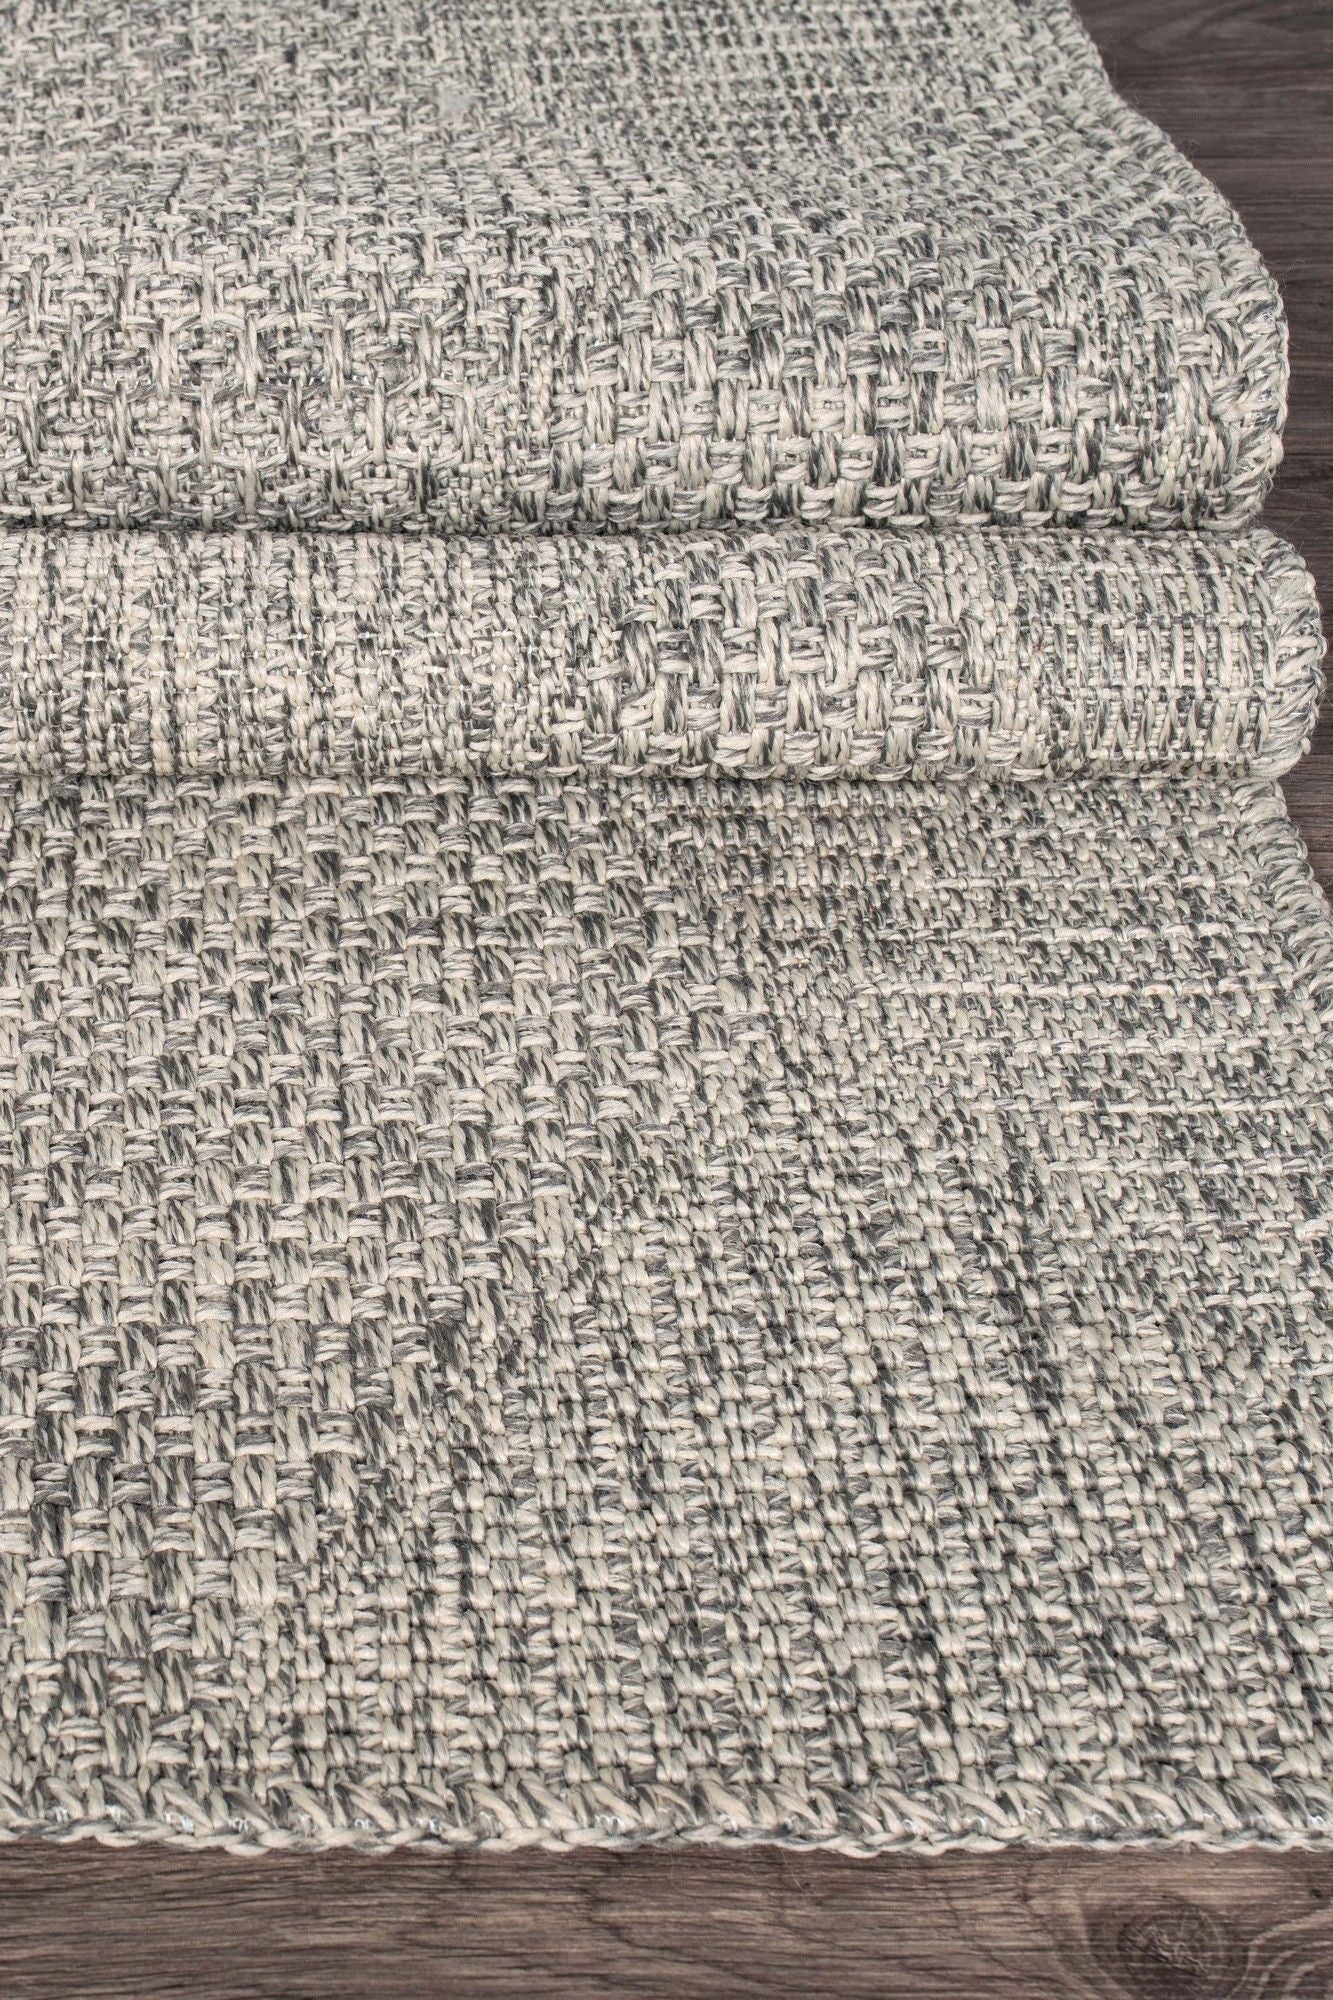 Rusticana 3104 - Hall Carpet (160 x 400)